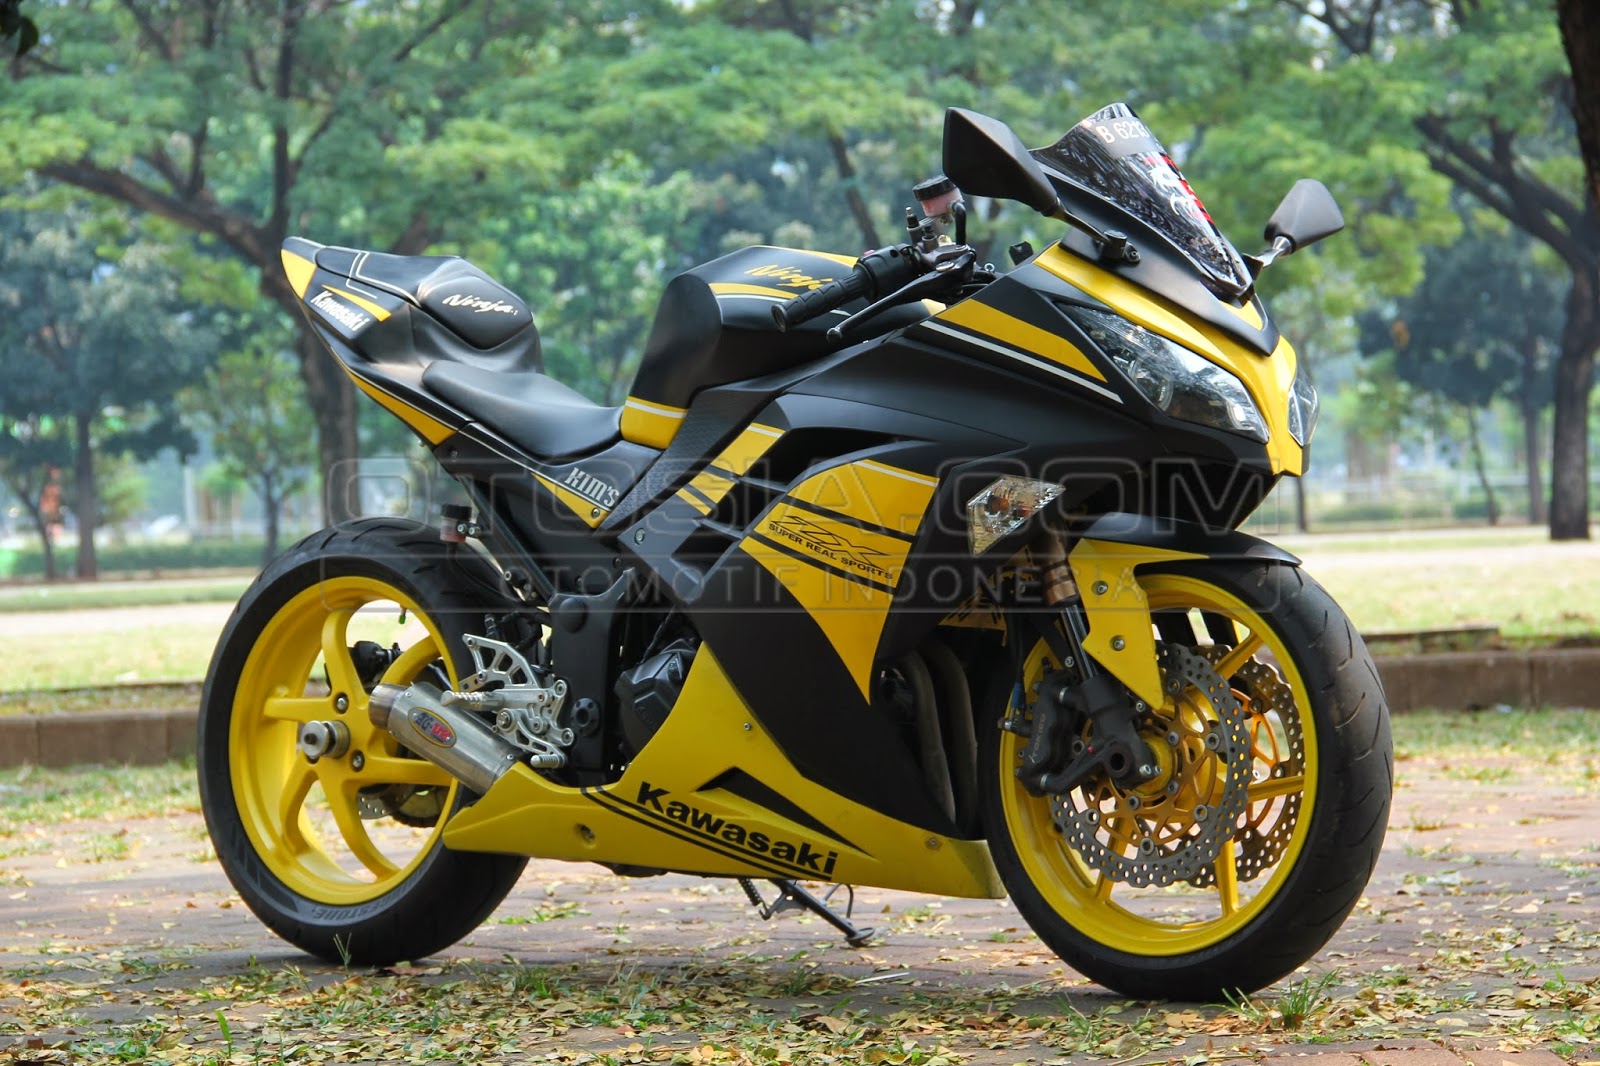 Foto Foto Desain Modif Kawasaki Ninja 250 Terbaru 2014 Foto Dan